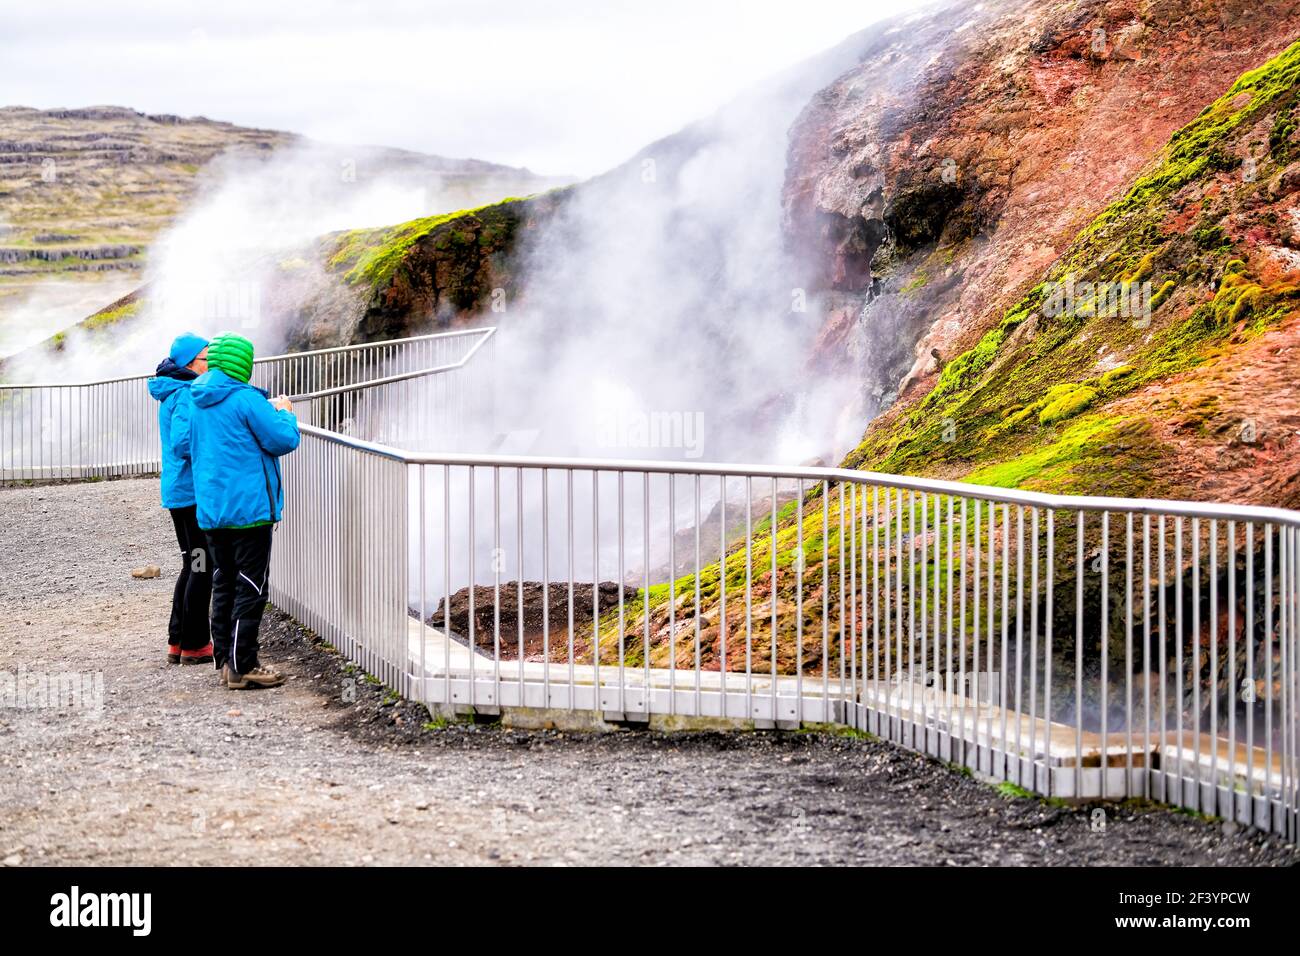 Deildartunguhver, Islande - 18 juin 2018 : sources d'eau chaude et personnes regardant l'eau chaude dehors en été avec la vapeur de vapeur qui s'élève de la grotte Banque D'Images